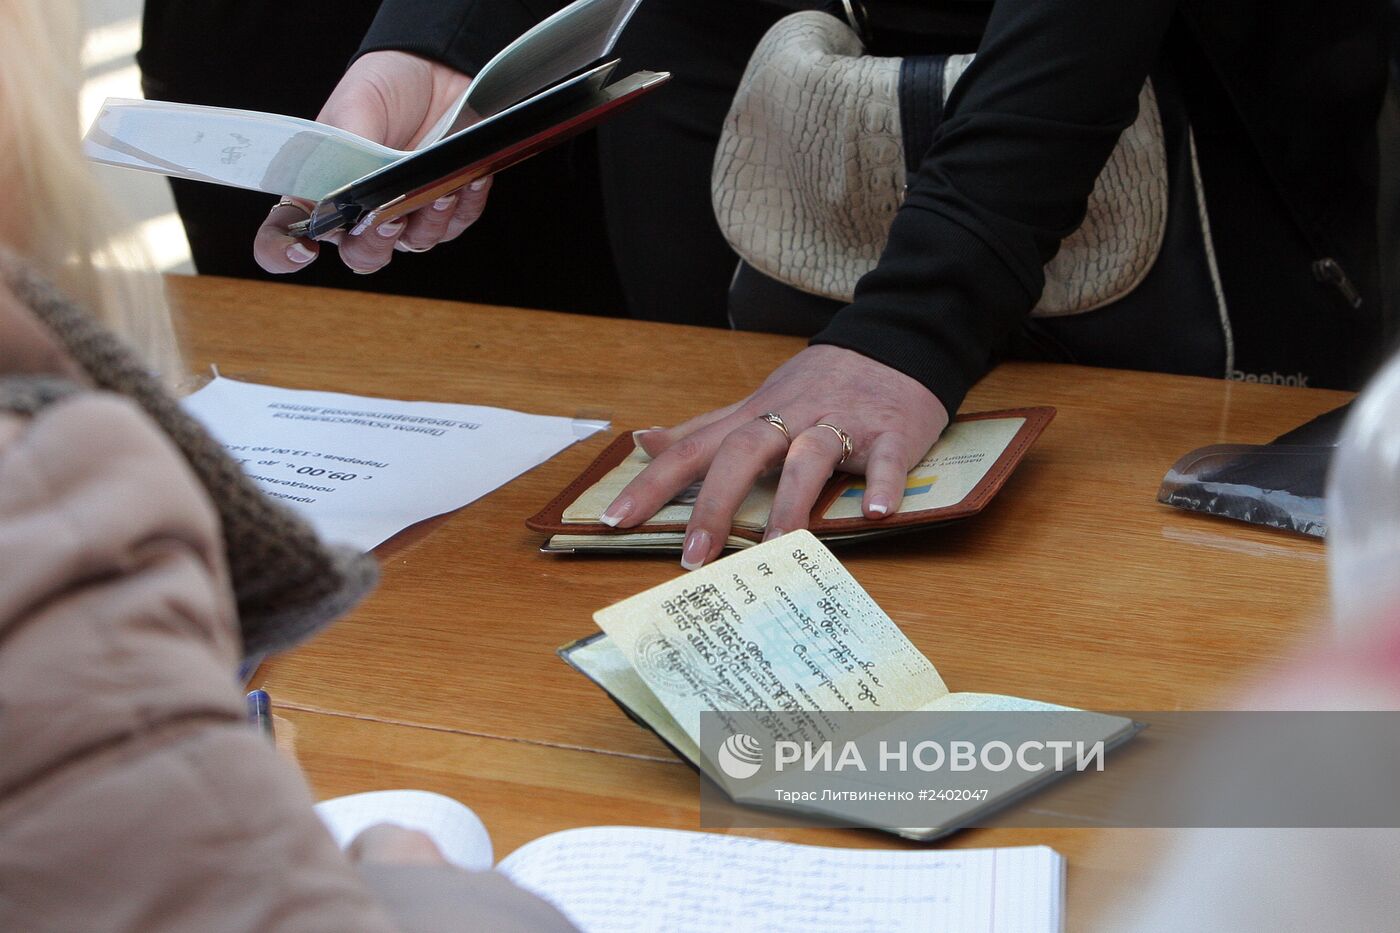 Запись на получение паспорта гражданина РФ в одном паспортных столов Симферополя